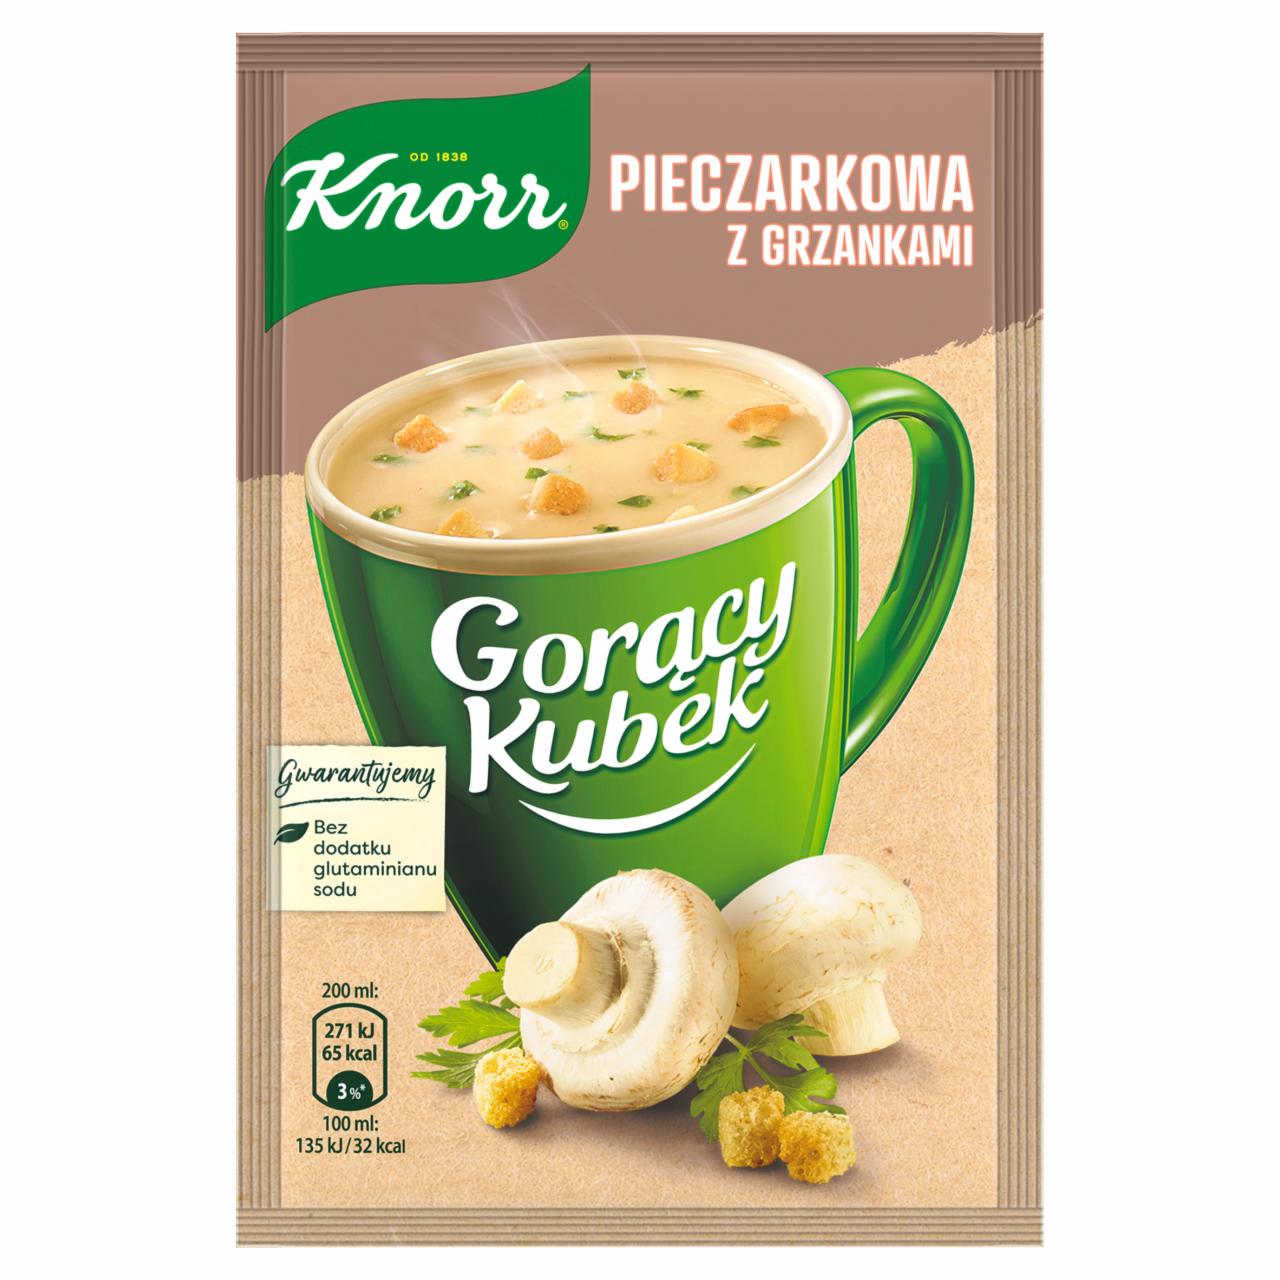 Fotografie - Pieczarkowa z grzankami goracy kubek Knorr